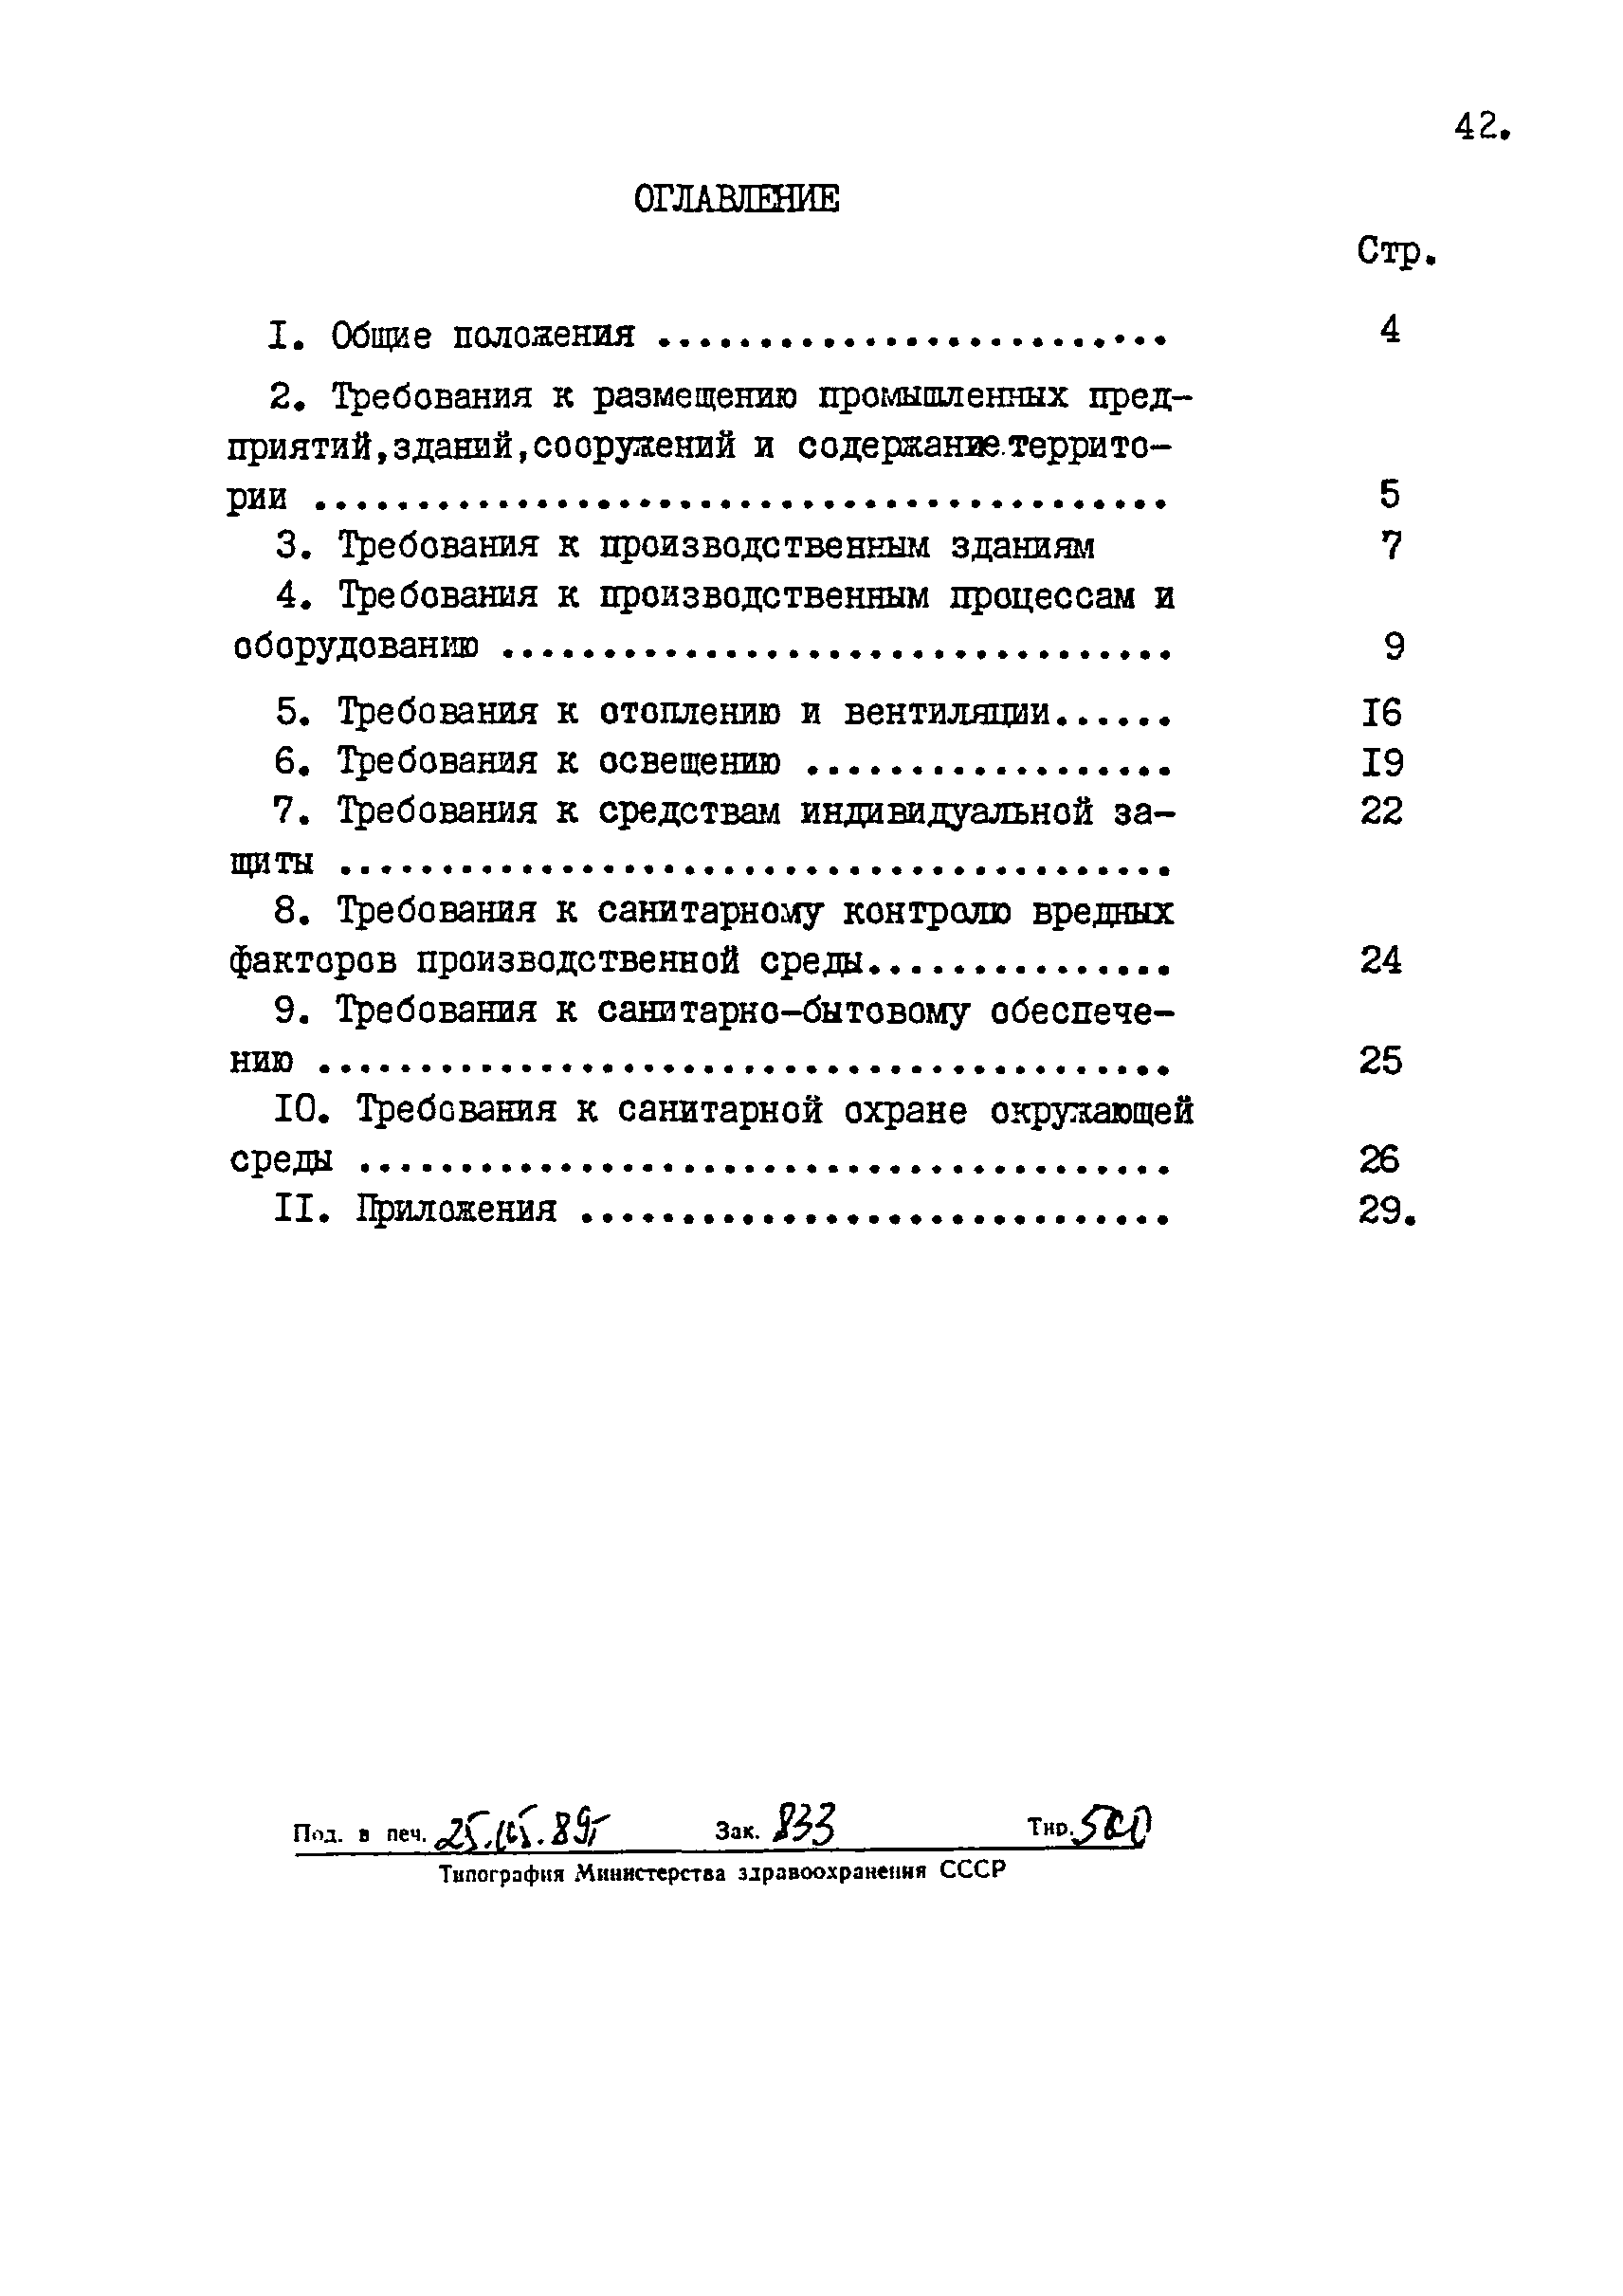 СП 4950-89